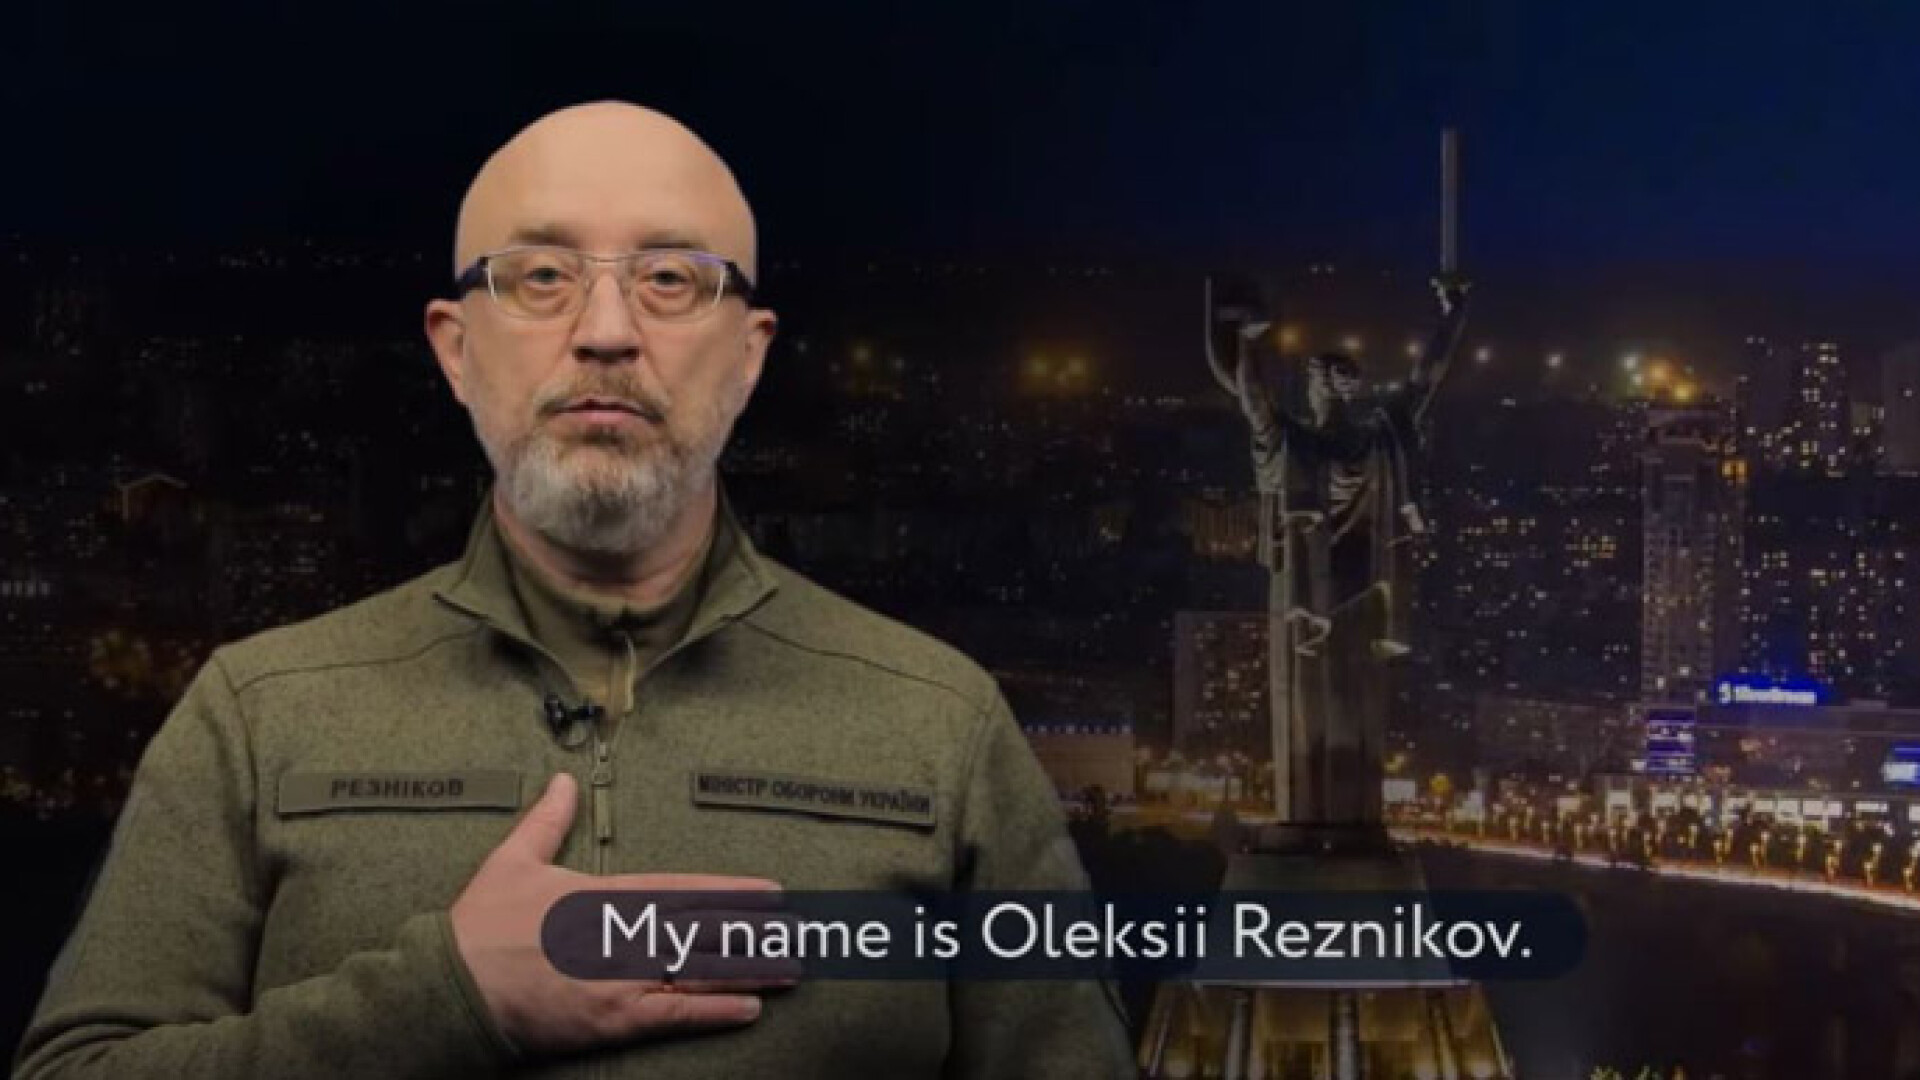 Oleksii Reznikov